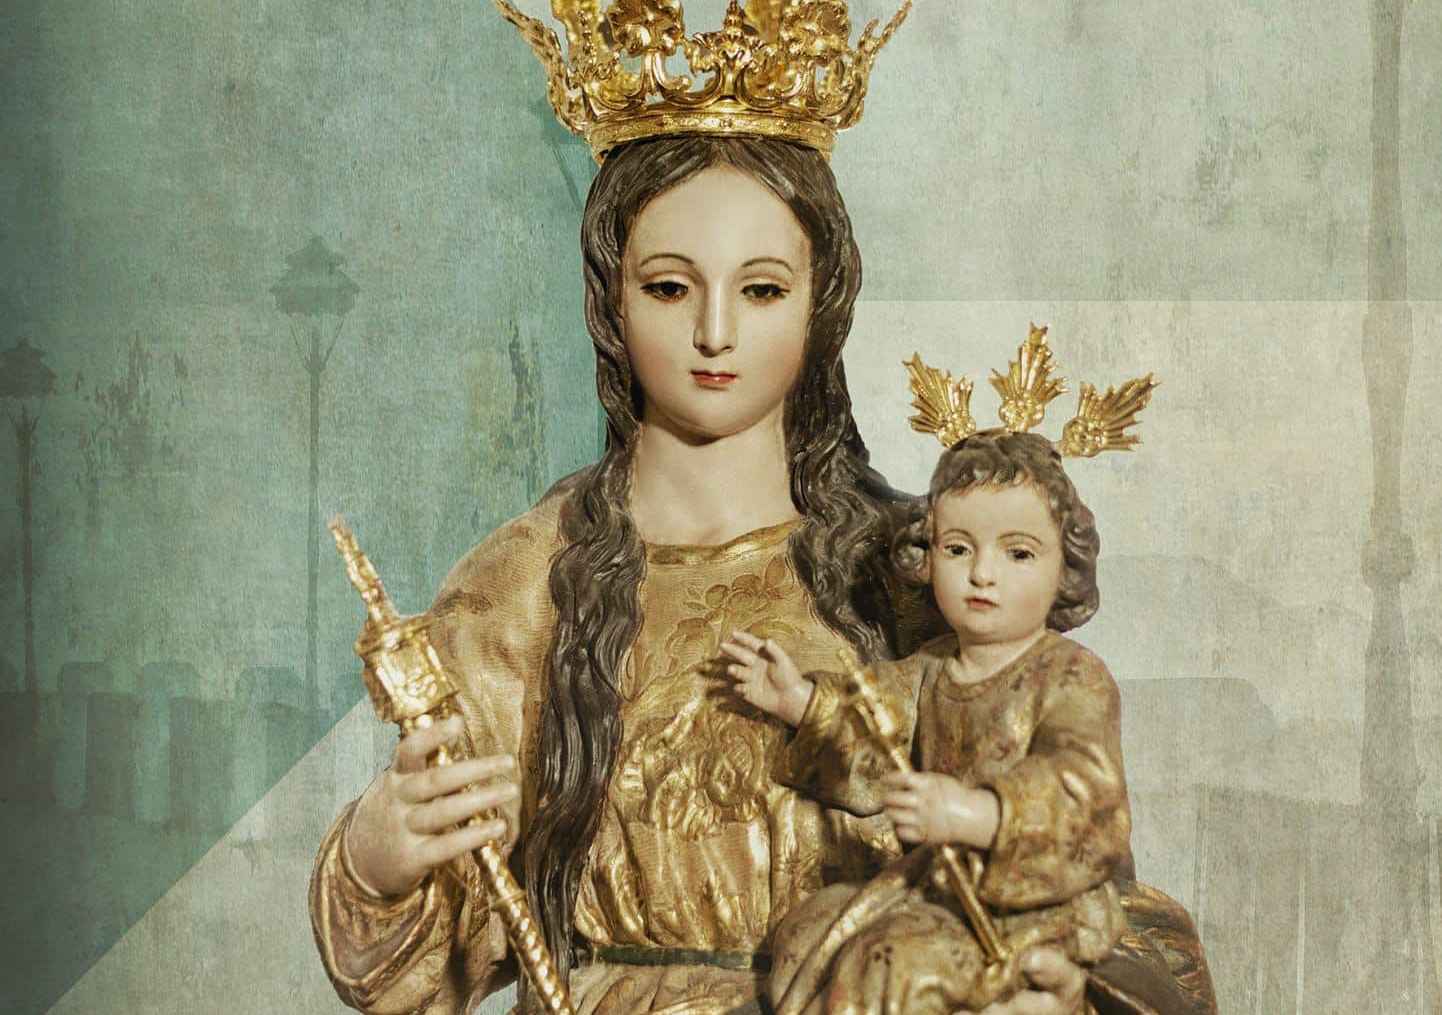 Ntra. Señora la Virgen del Buen Suceso.